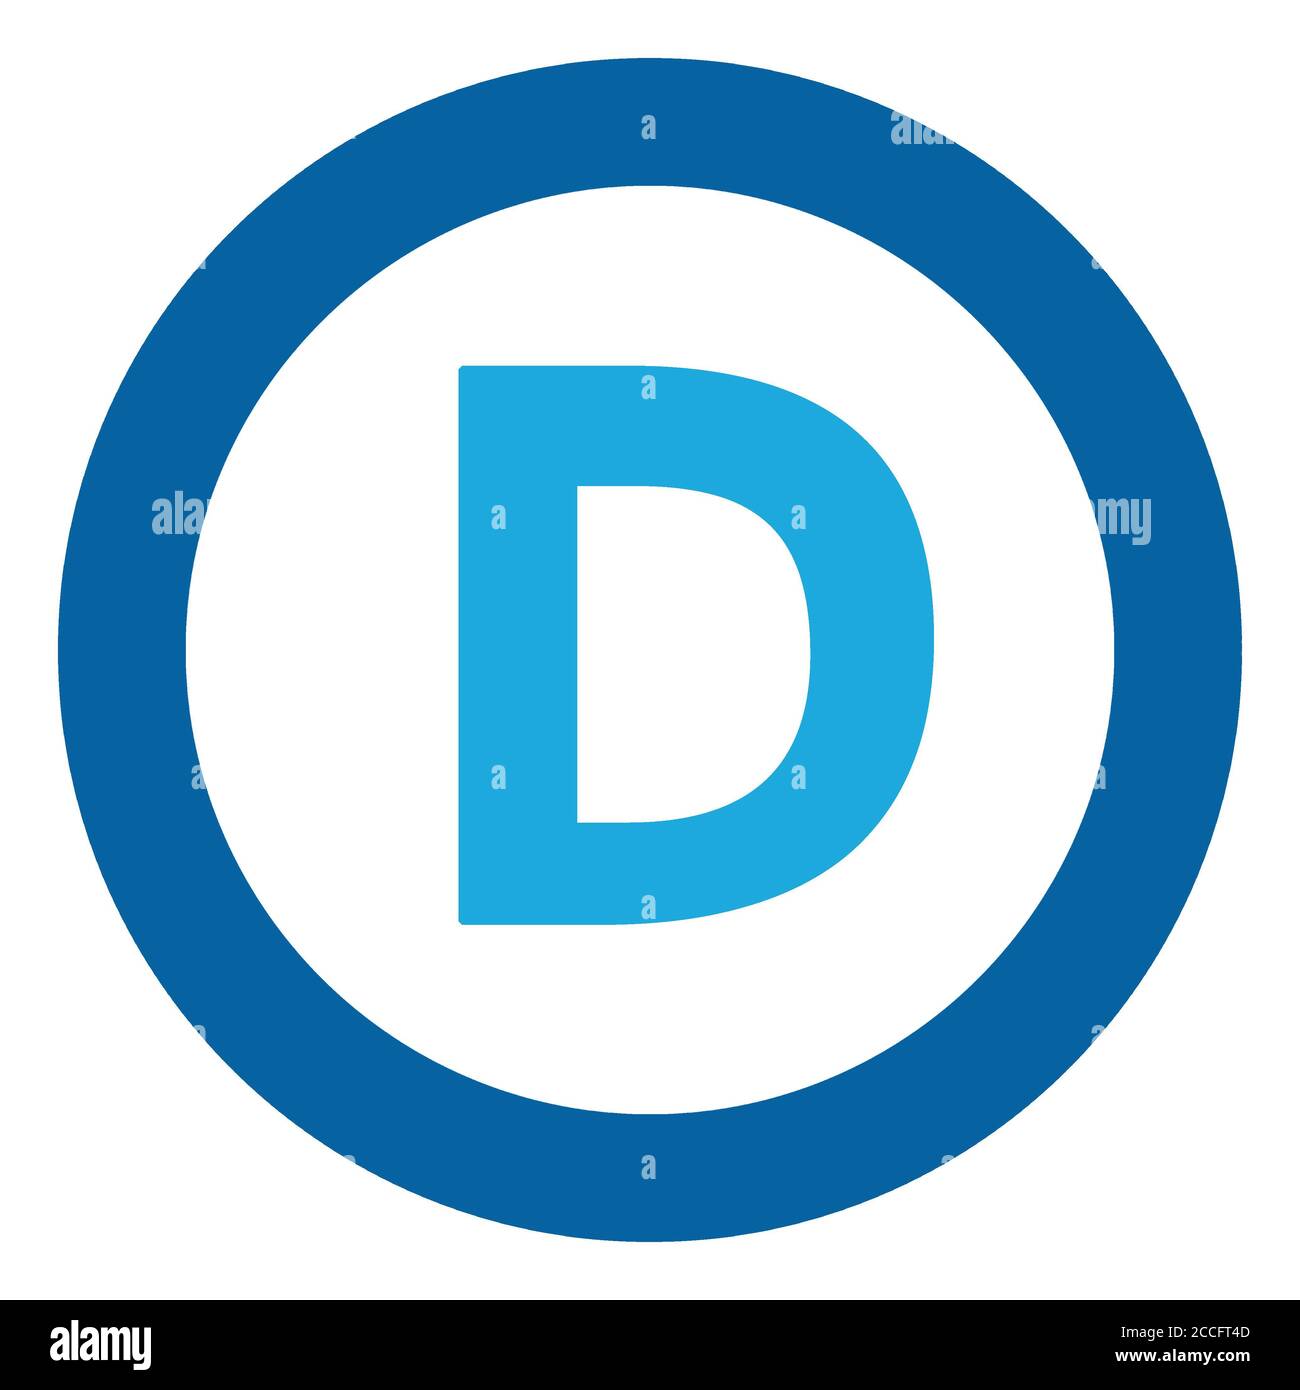 Democratic Party Stock Photo